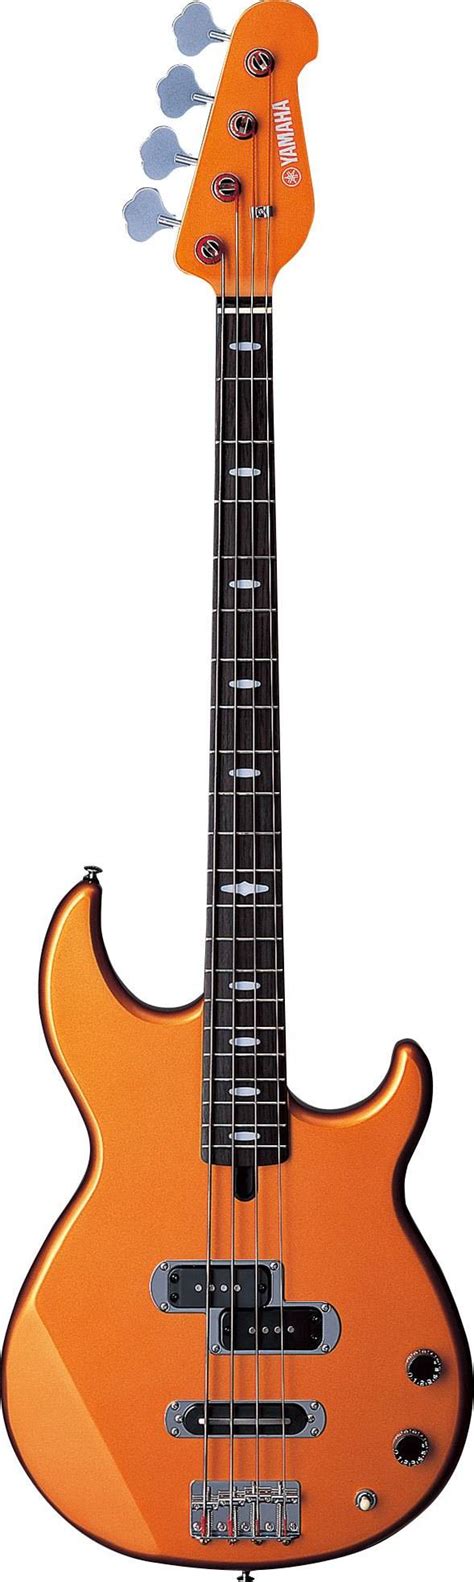 yamaha bb  string electric bass guitar orange metallic bb